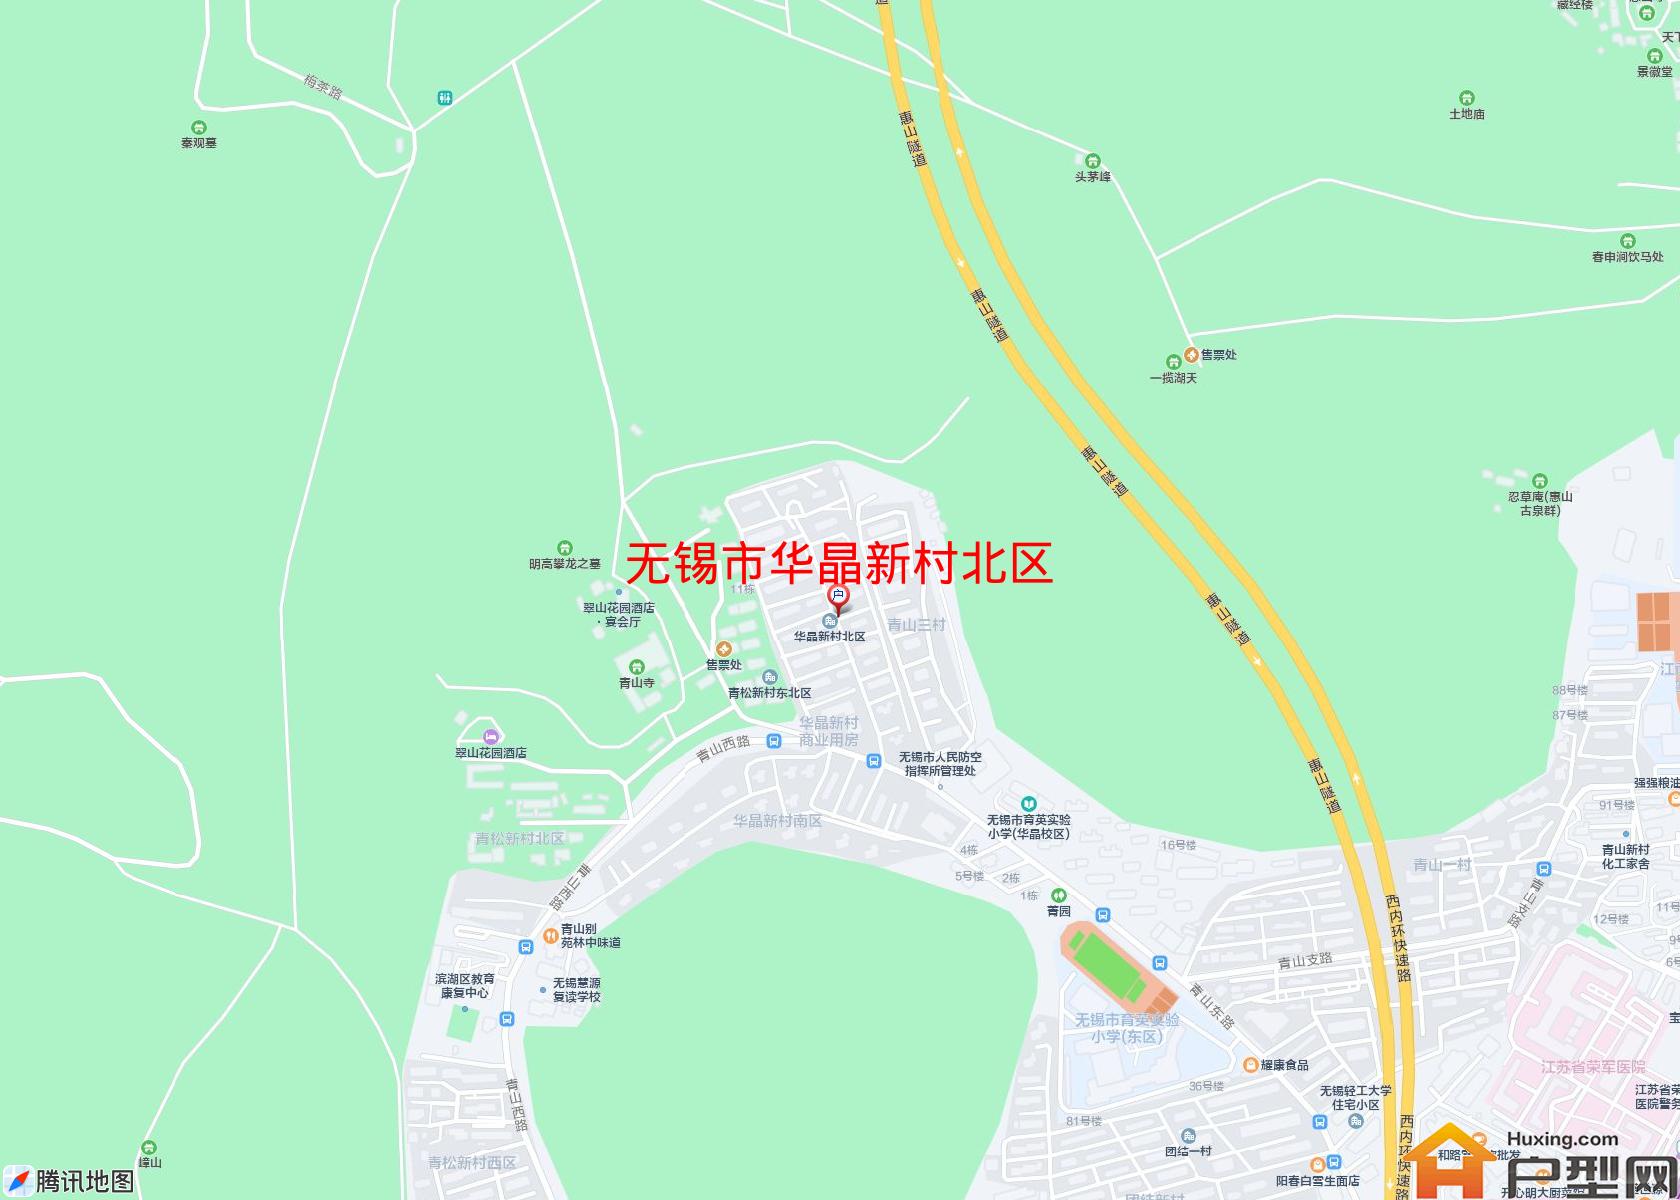 华晶新村北区小区 - 户型网